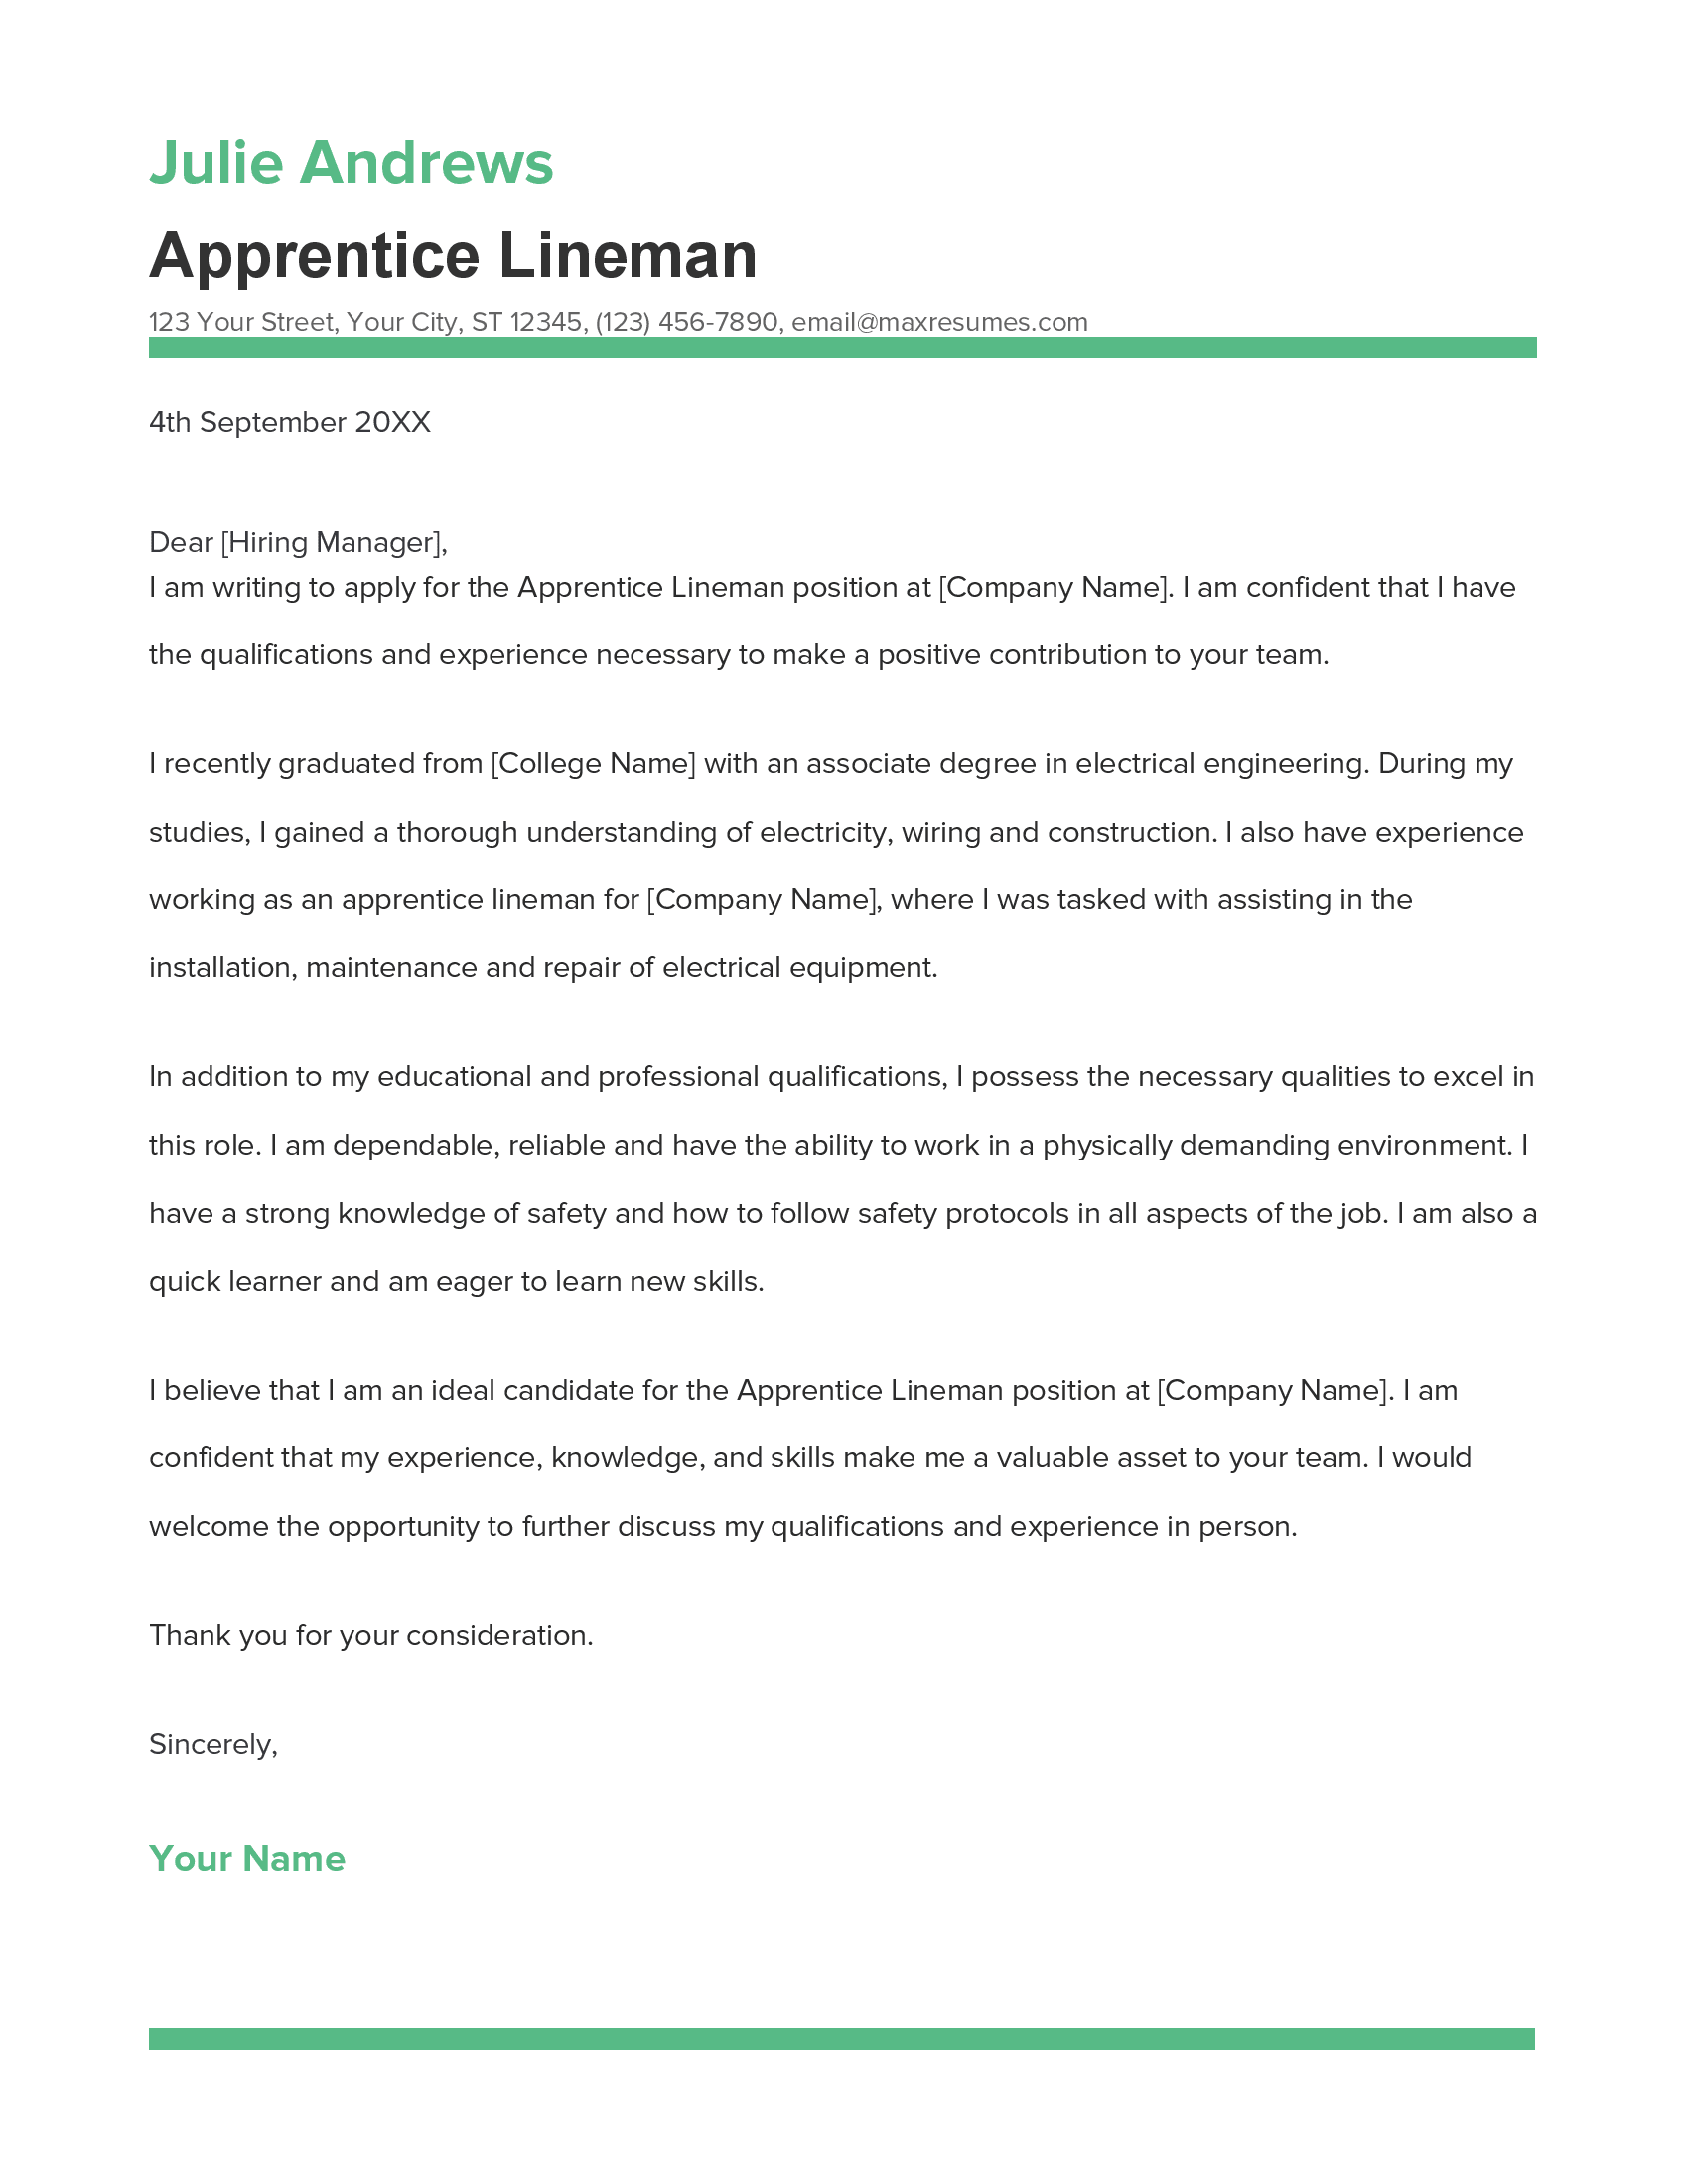 cover letter for apprentice lineman